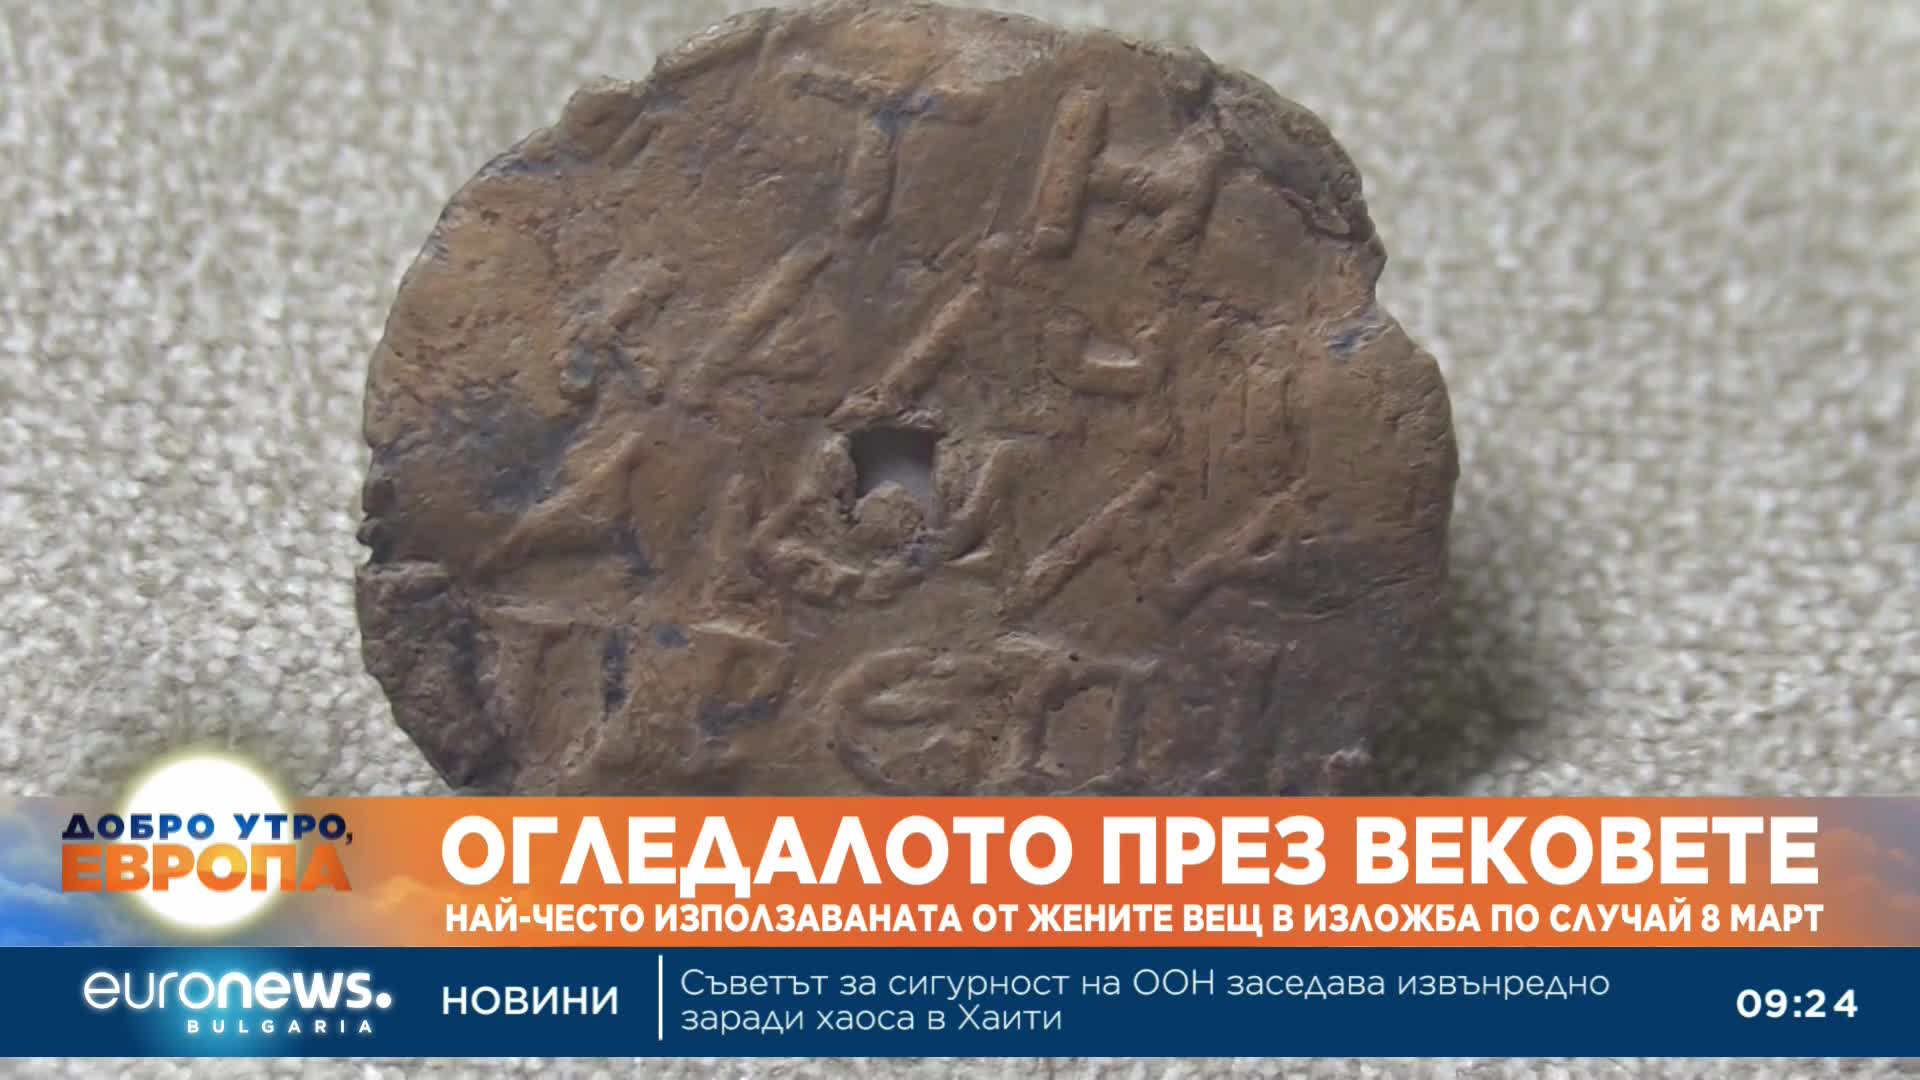 Археологическа експозиция в Бургас показва историята на огледалата